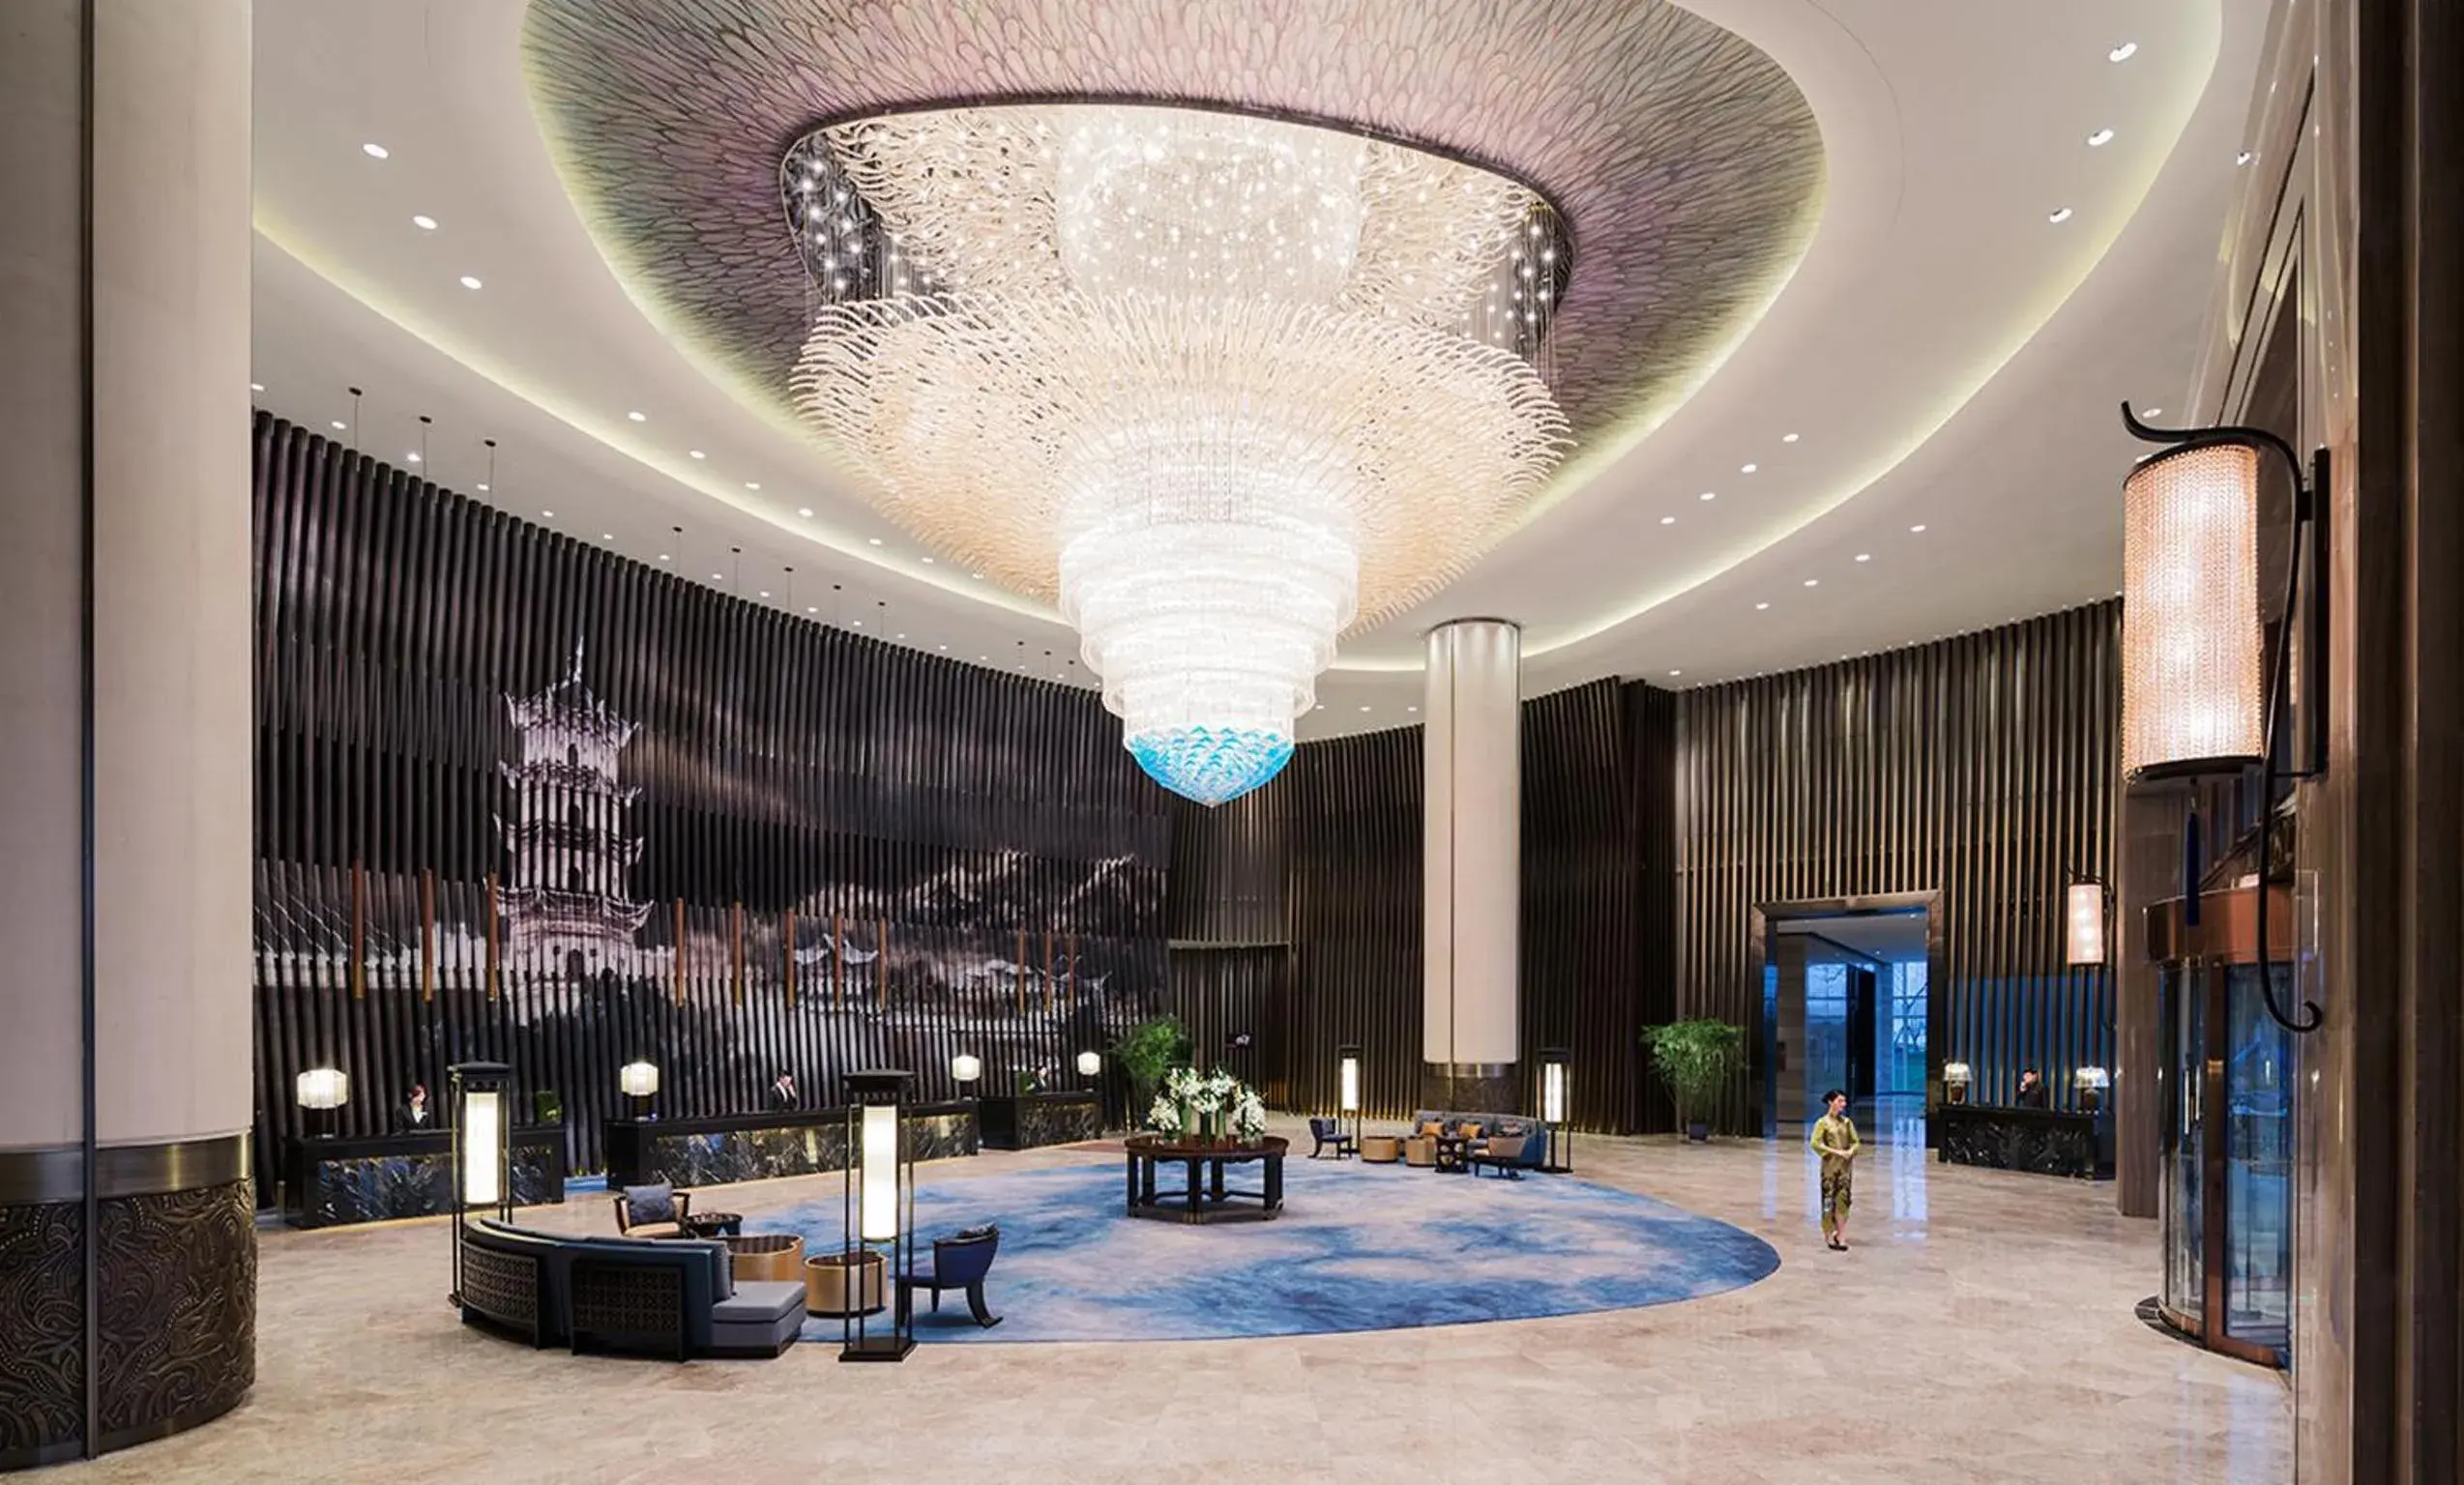 Lobby or reception in Wanda Realm Hotel Wuhu